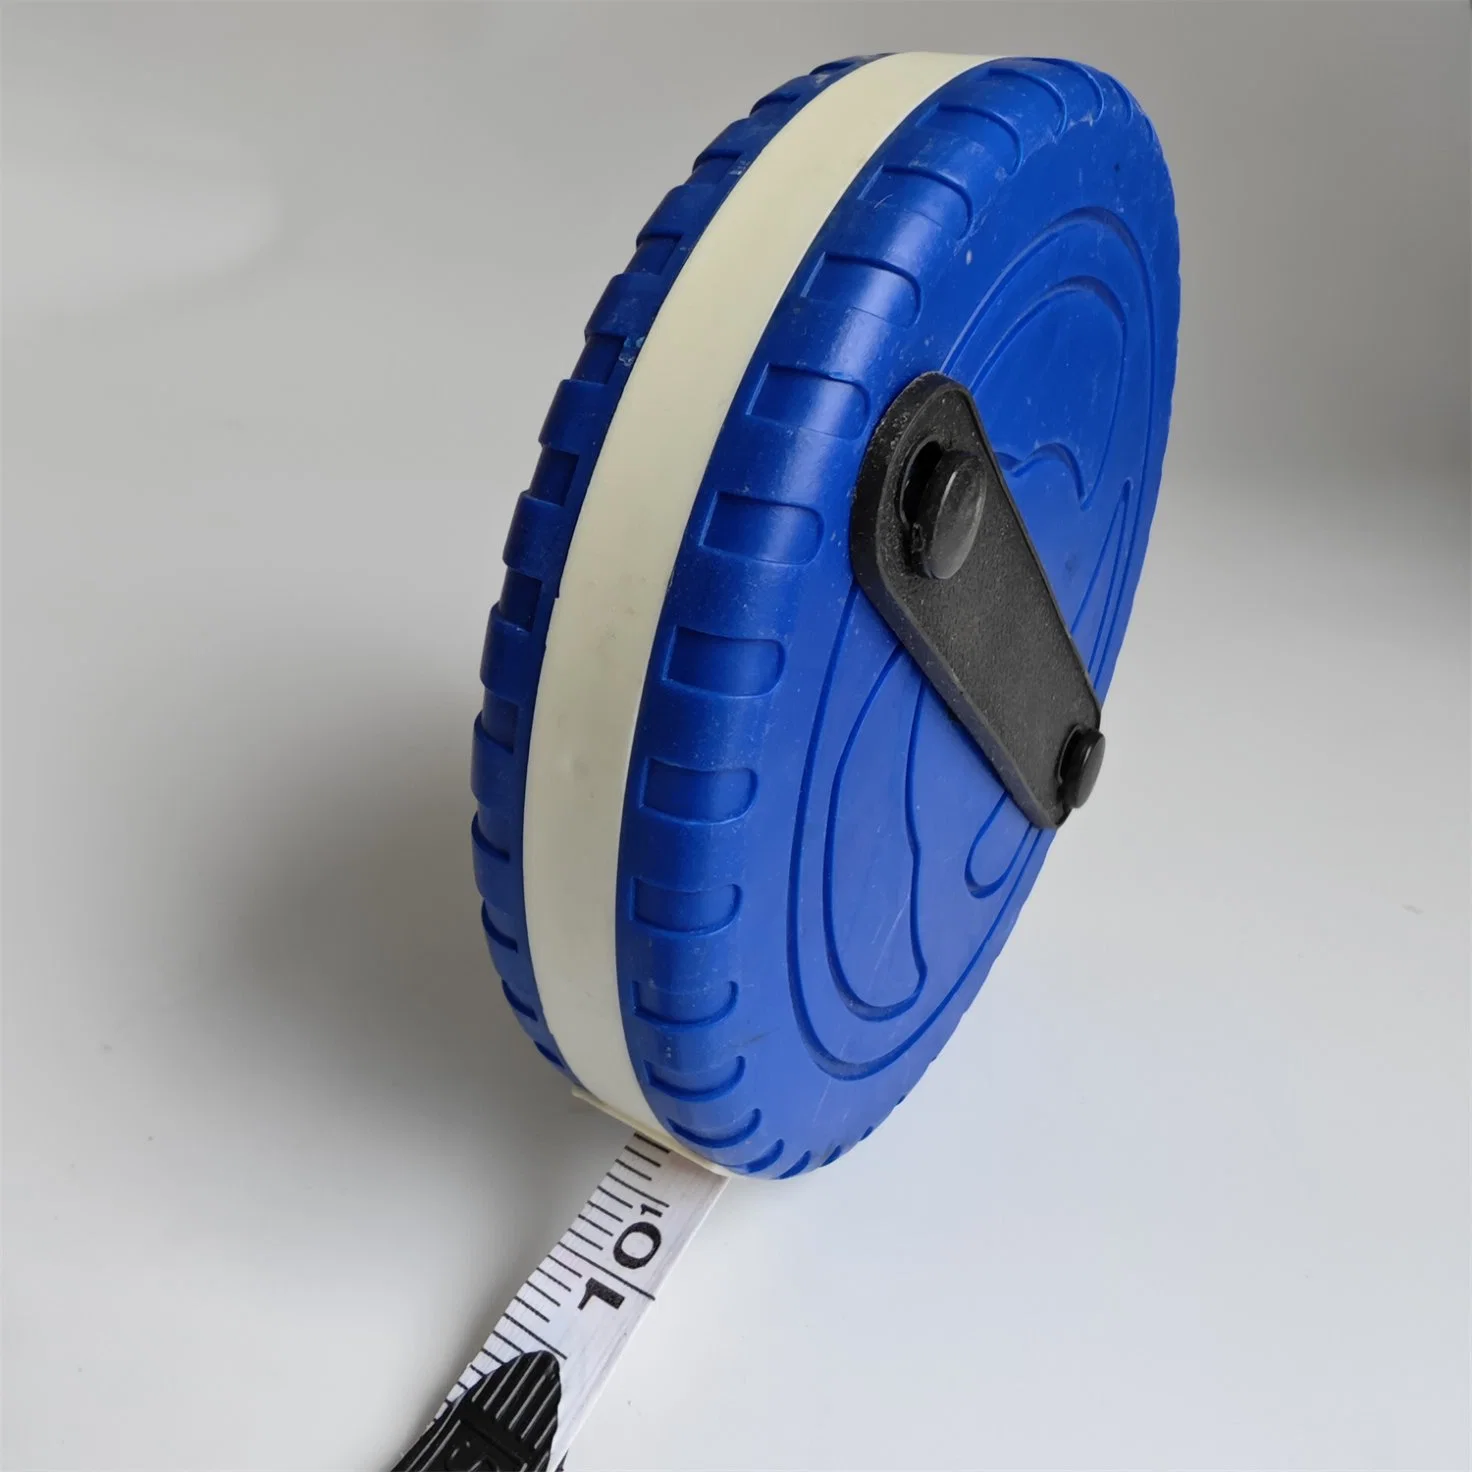 Closed Blue Case Long Tape Measure 20m Round Shell Fiberglass Measuring Tape